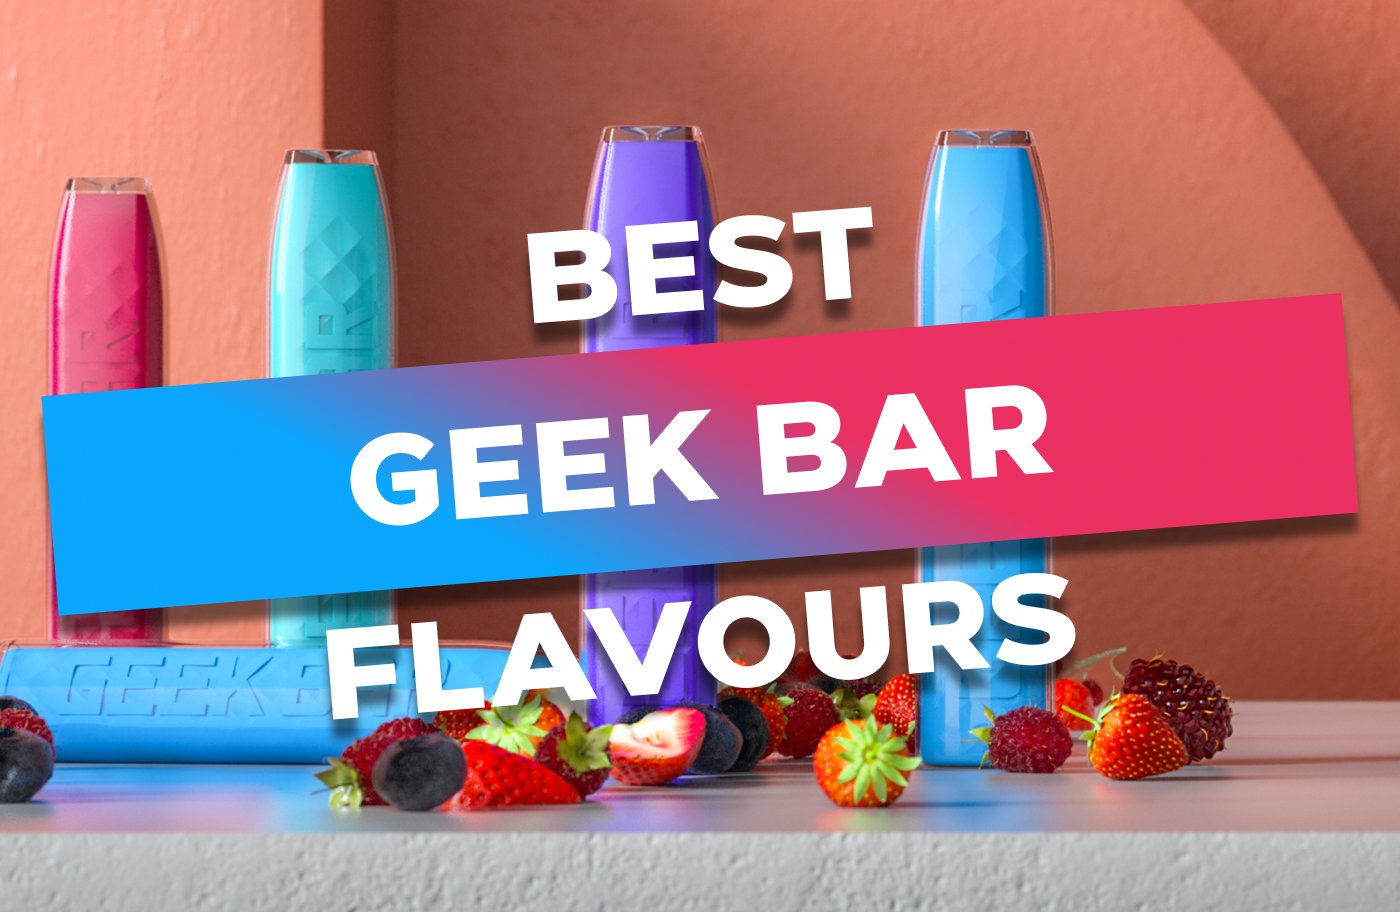 Best Geek Bar Flavours